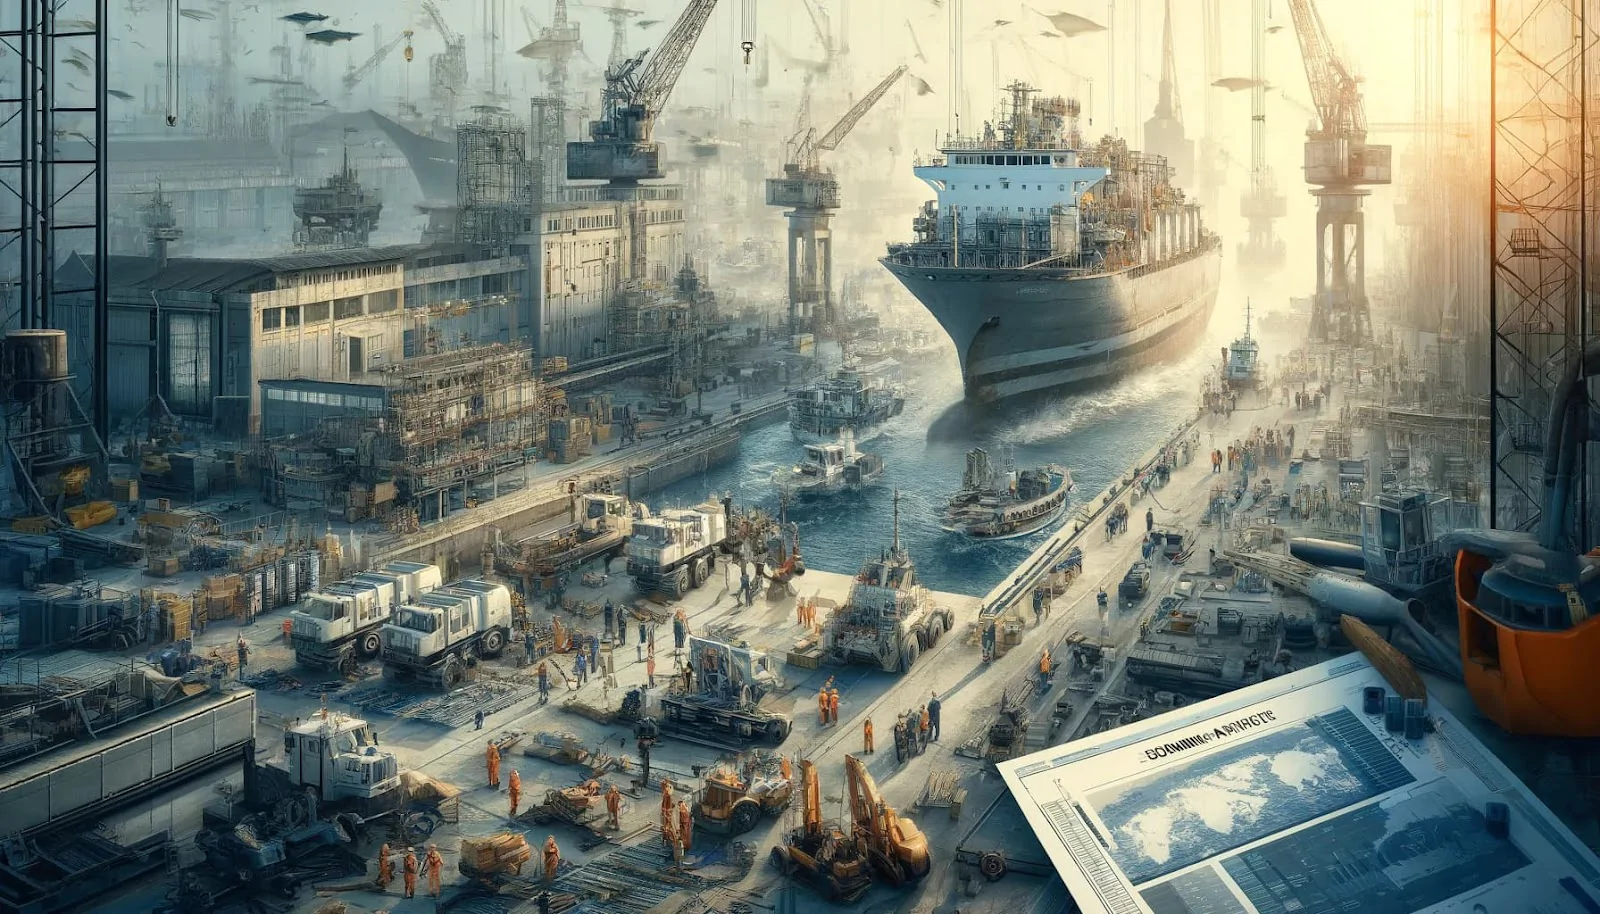 Budoucnost je tady: Jak lodní průmysl revolucionizuje globální ekonomiku